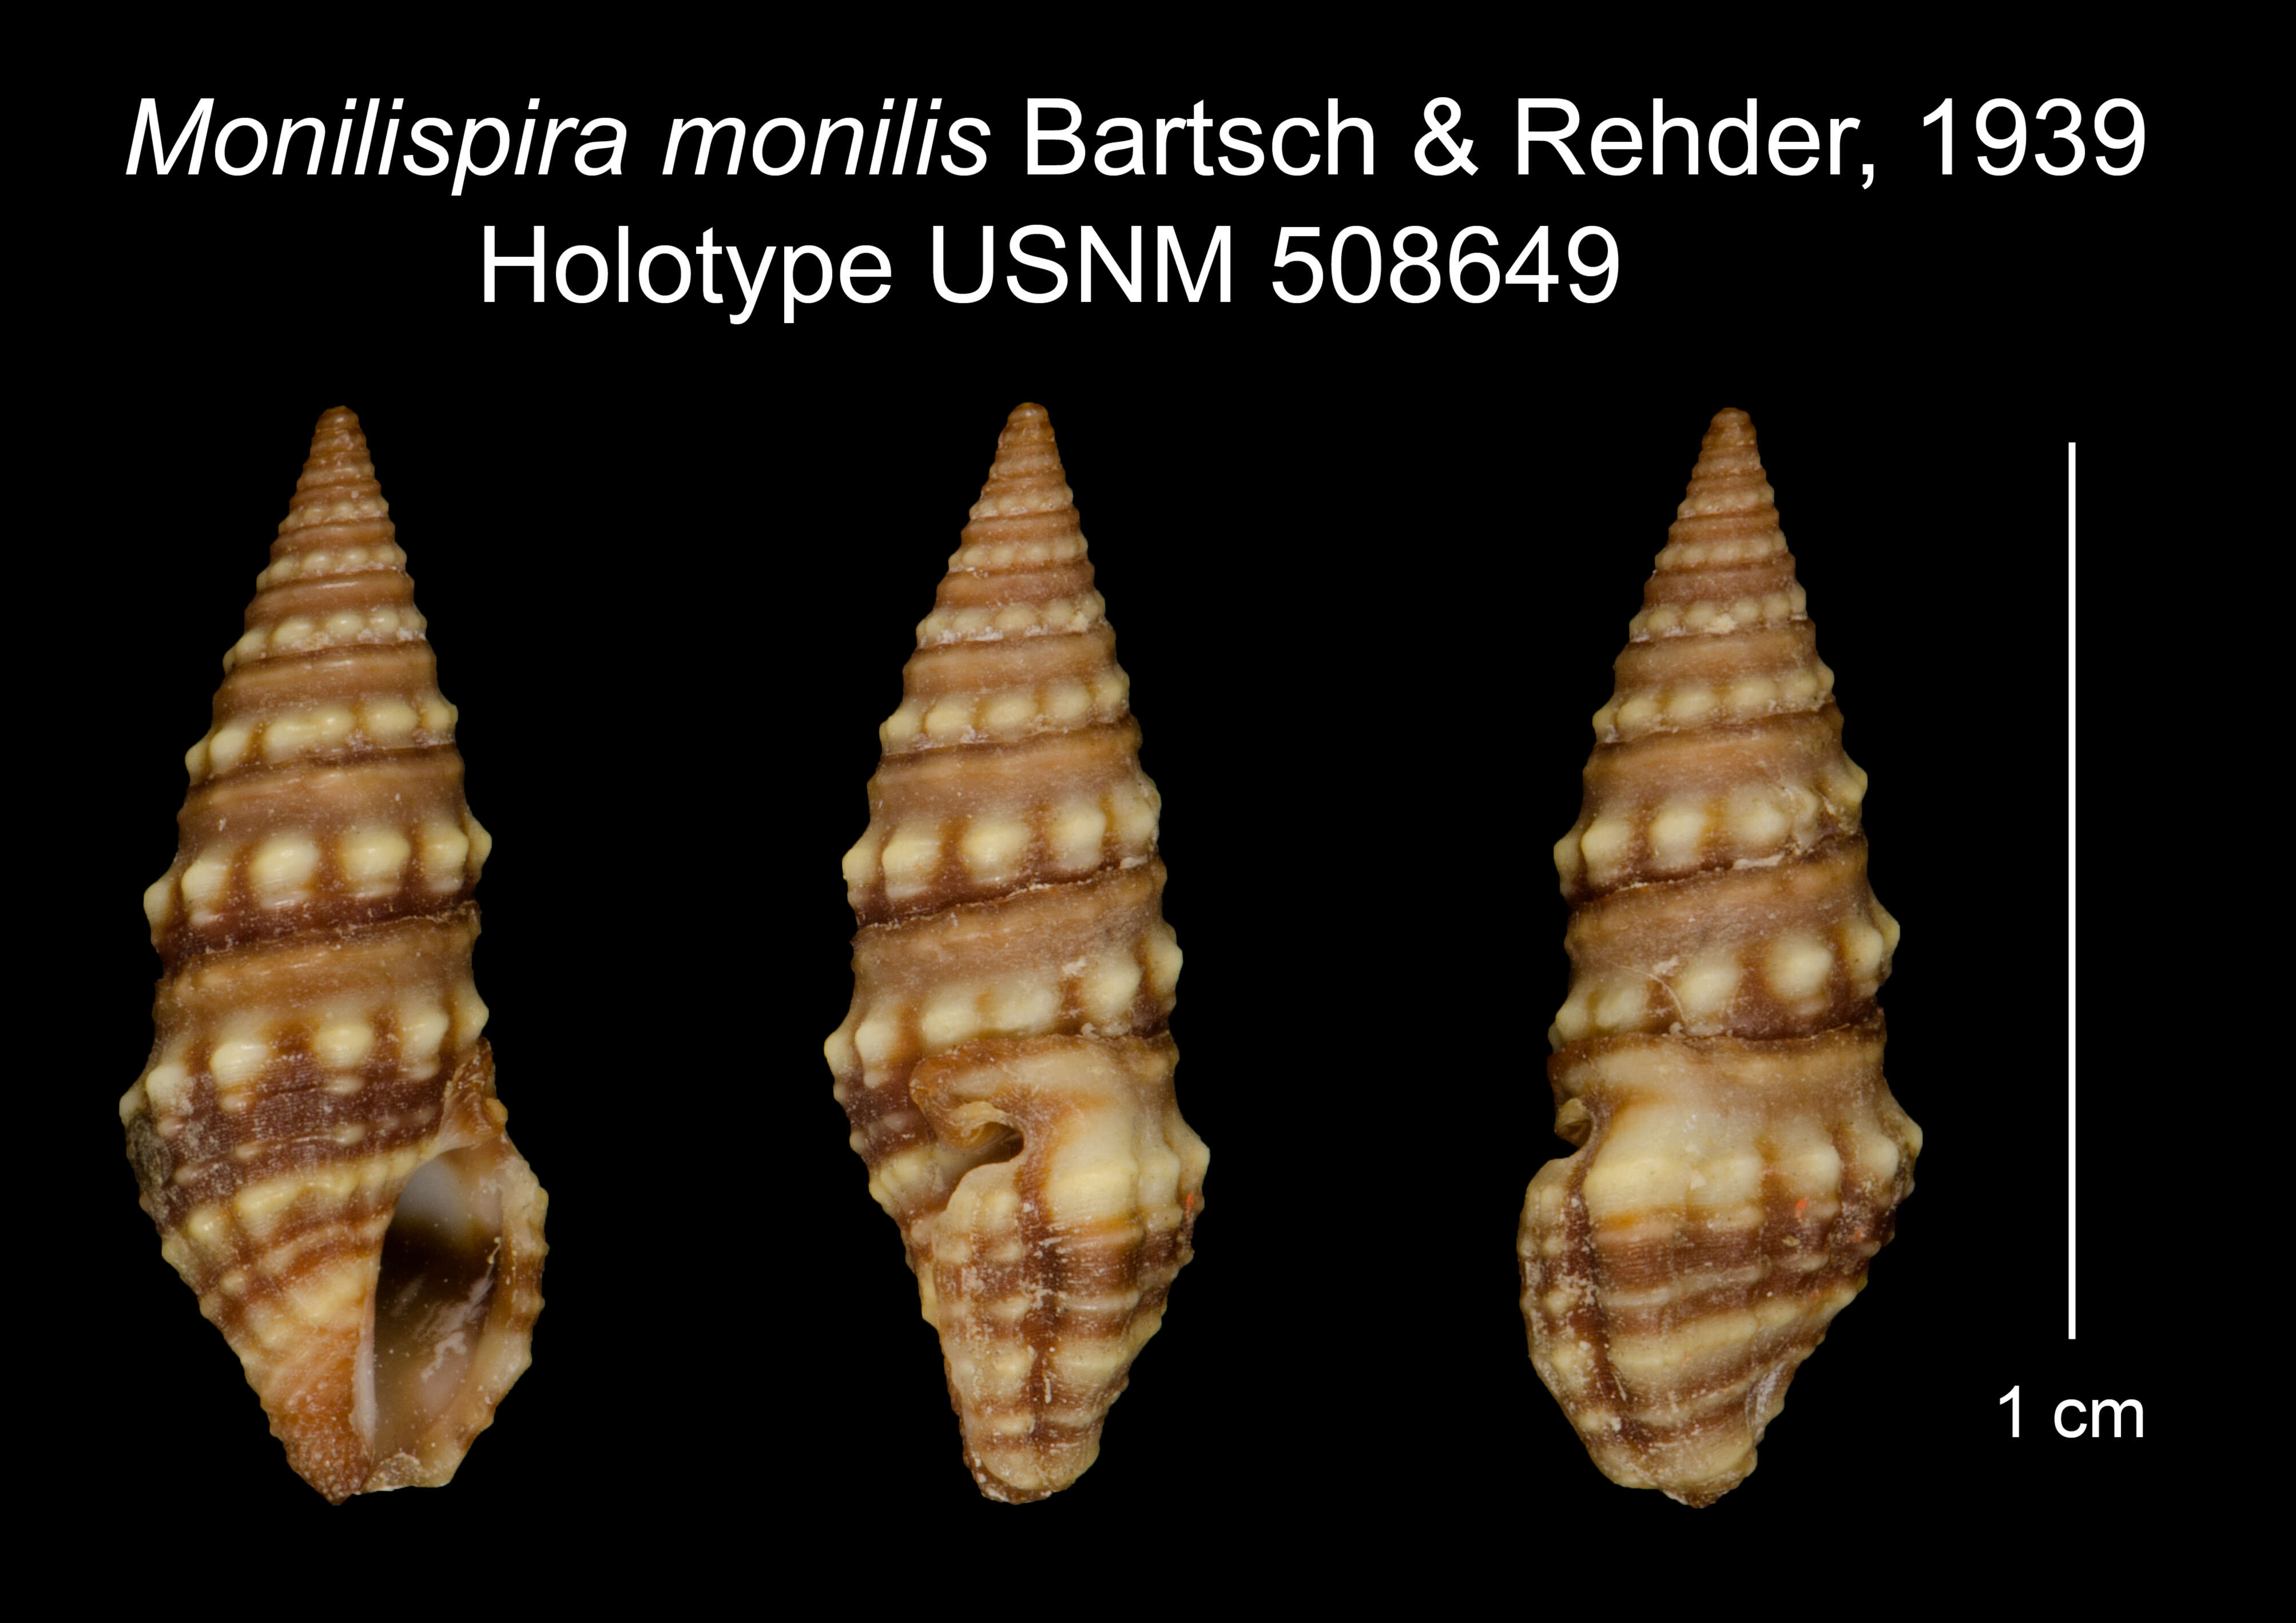 Image of Monilispira monilis Bartsch & Rehder 1939